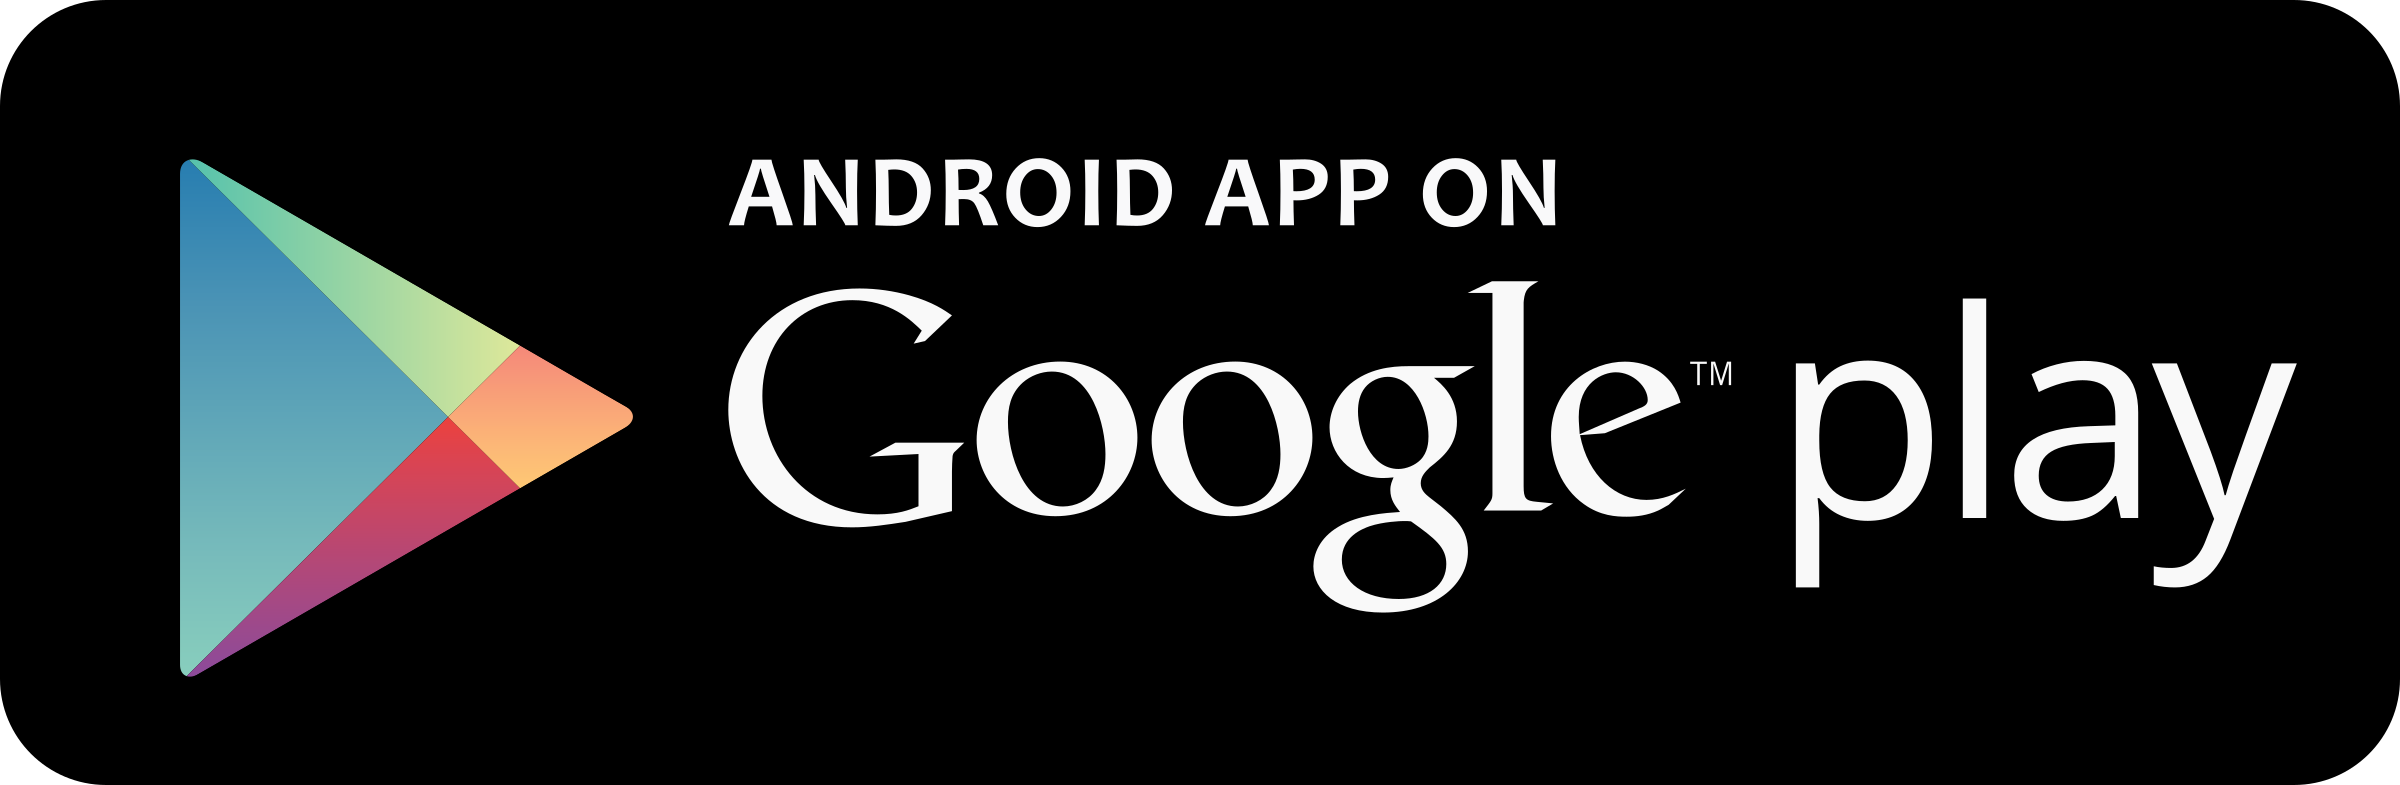 Samta Android App